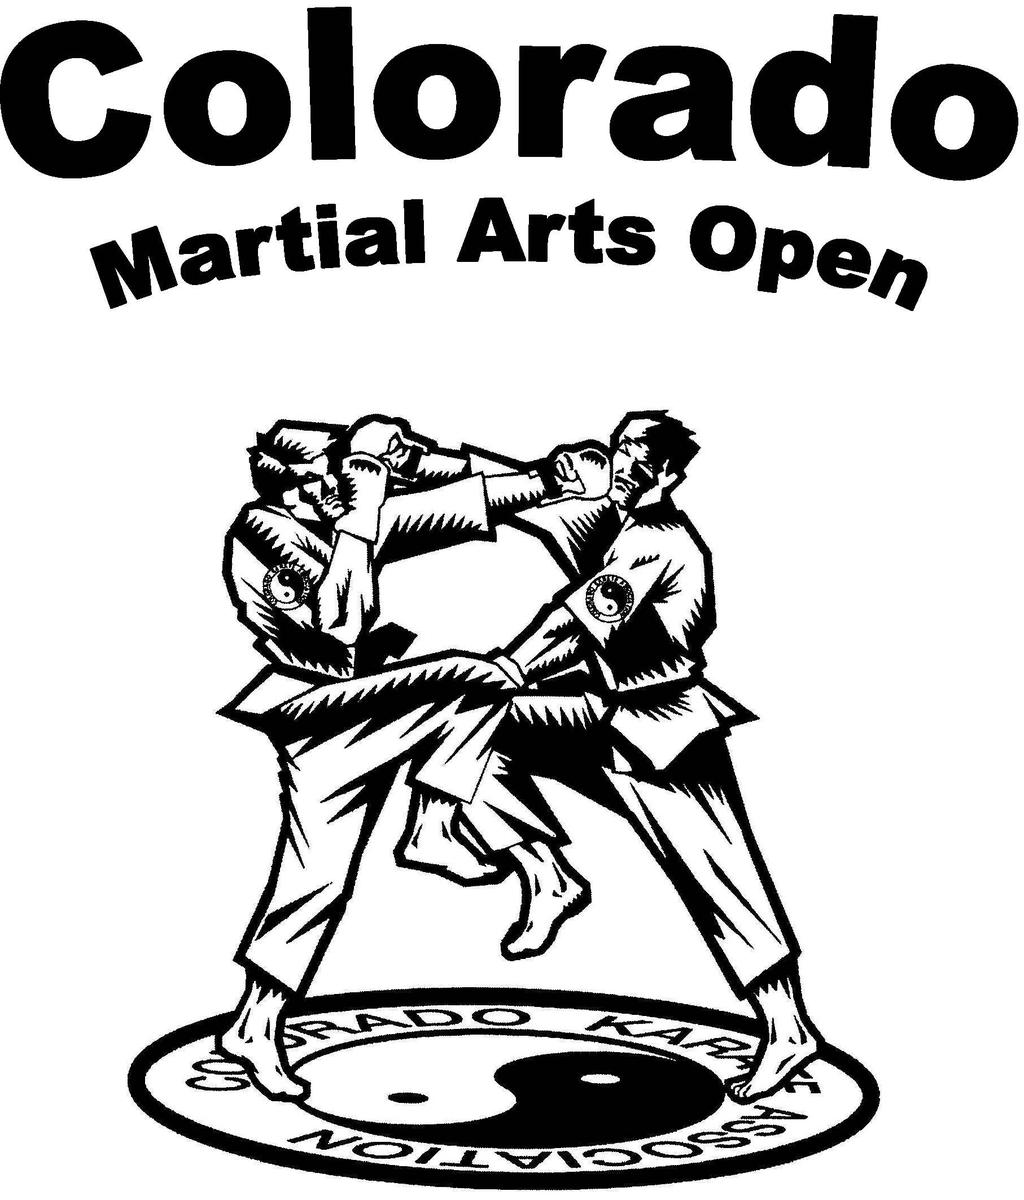 The Colorado Karate Association Presents: COLORADO Martial Arts Open